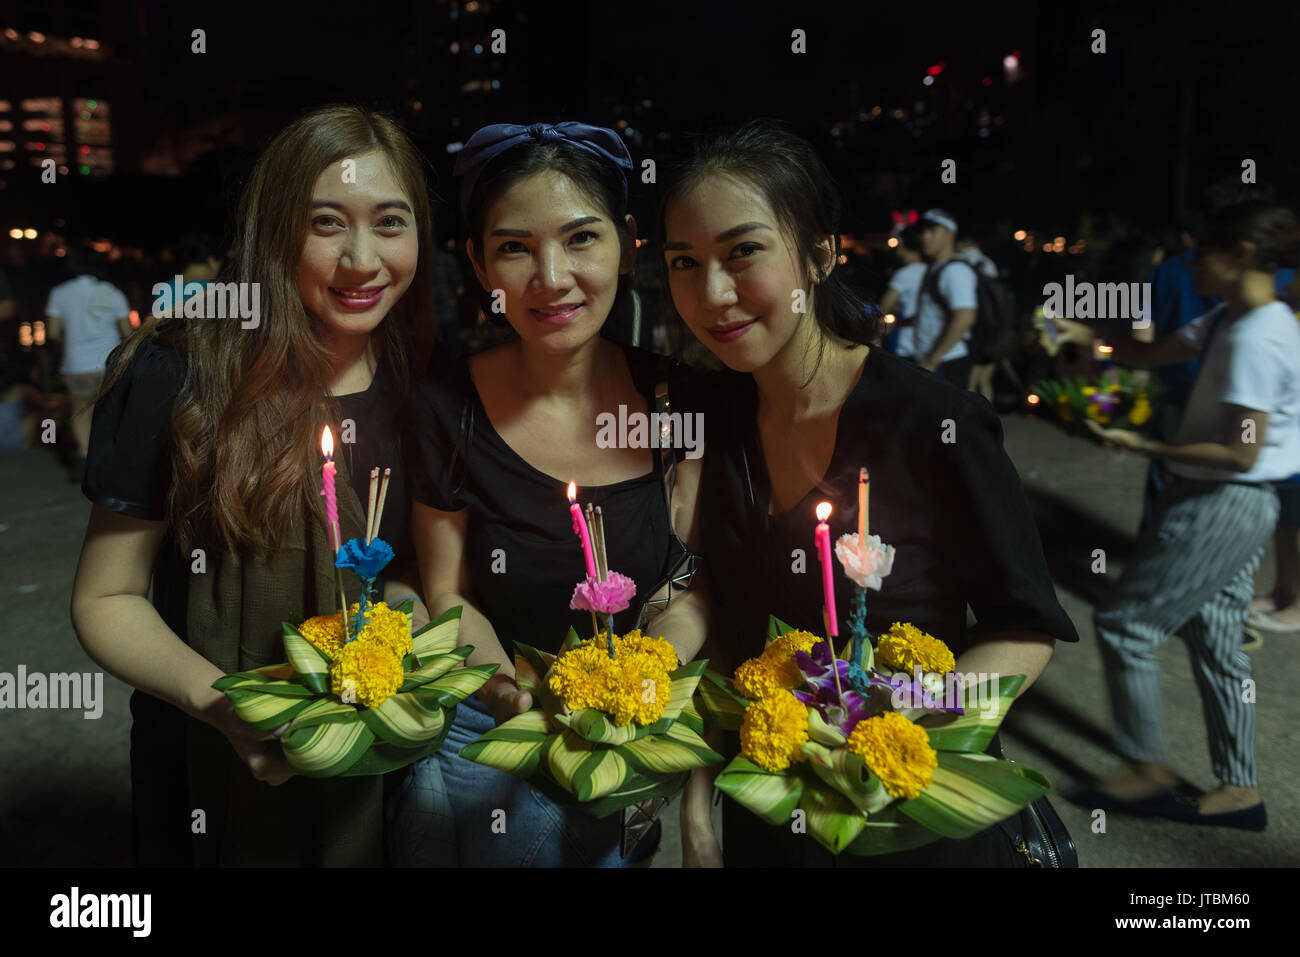 Trois filles thaïlandaises posent avec leur krathong sur fête de Loy Krathong en 2016 Banque D'Images